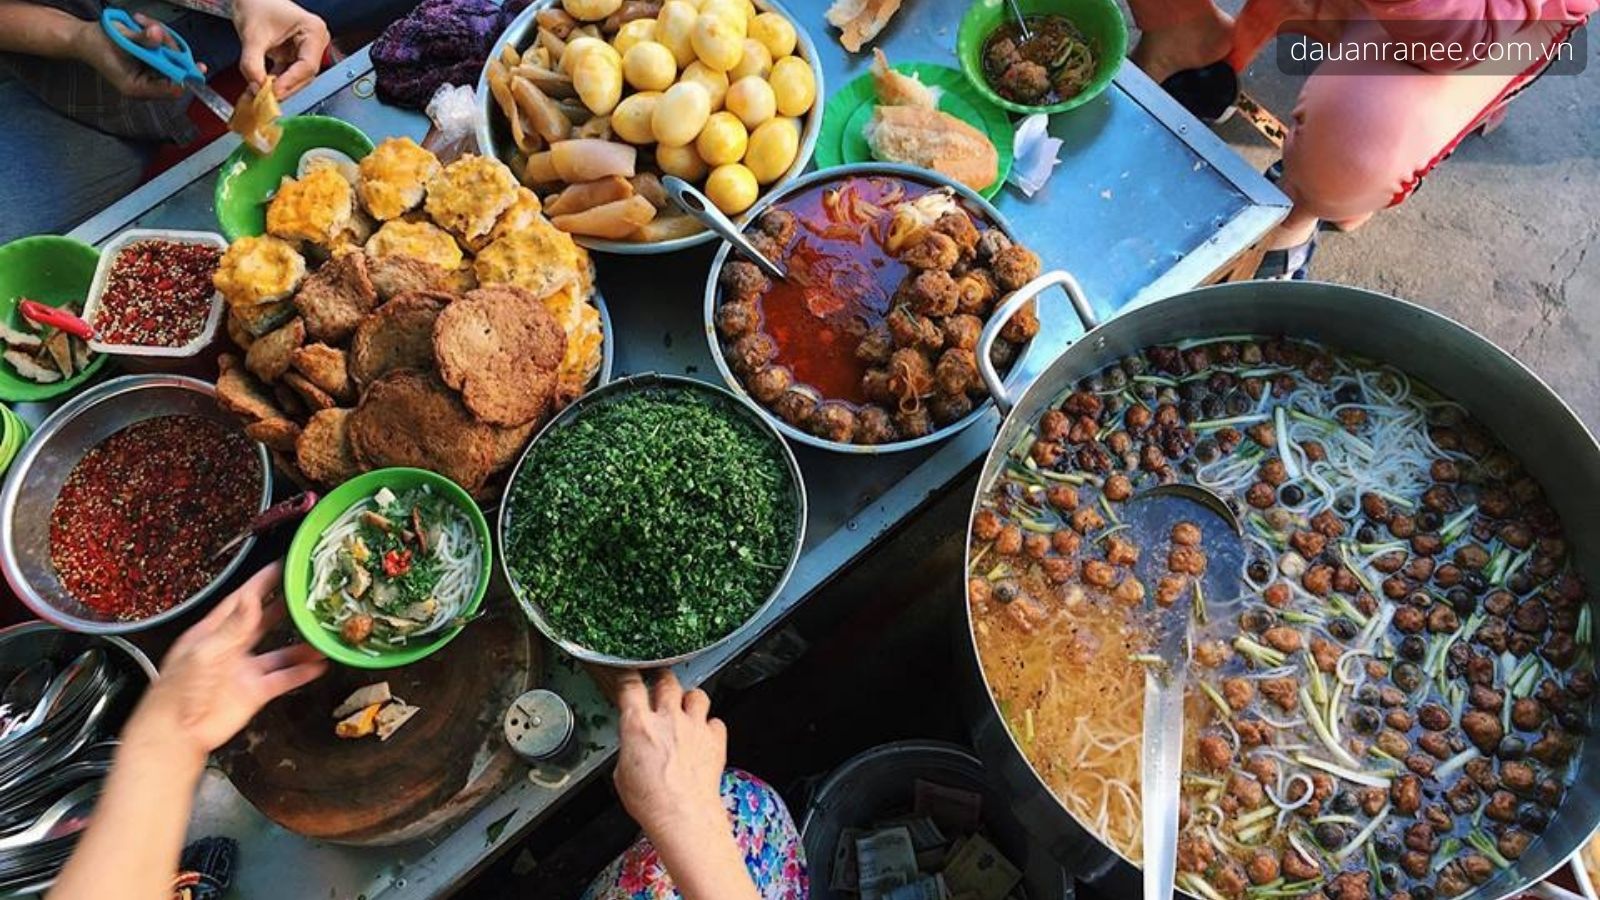 Bánh canh chả cá đặc sản Bình Thuận được yêu thích